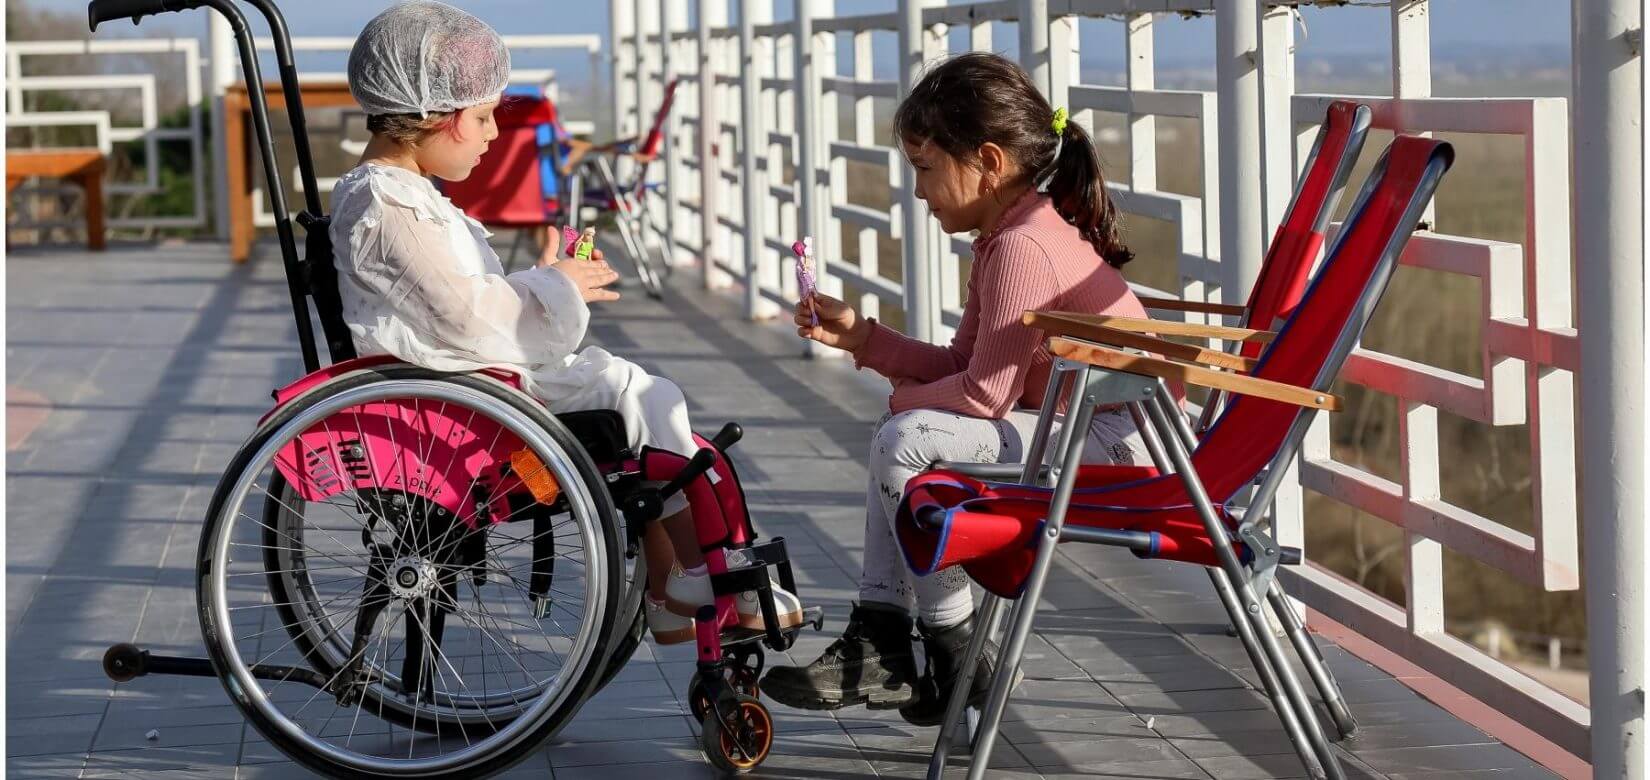 Τι να πείτε στο παιδί σας όταν δει κάποιον σε αναπηρικό αμαξίδιο & πώς να το εξοικειώσετε με την διαφορετικότητα